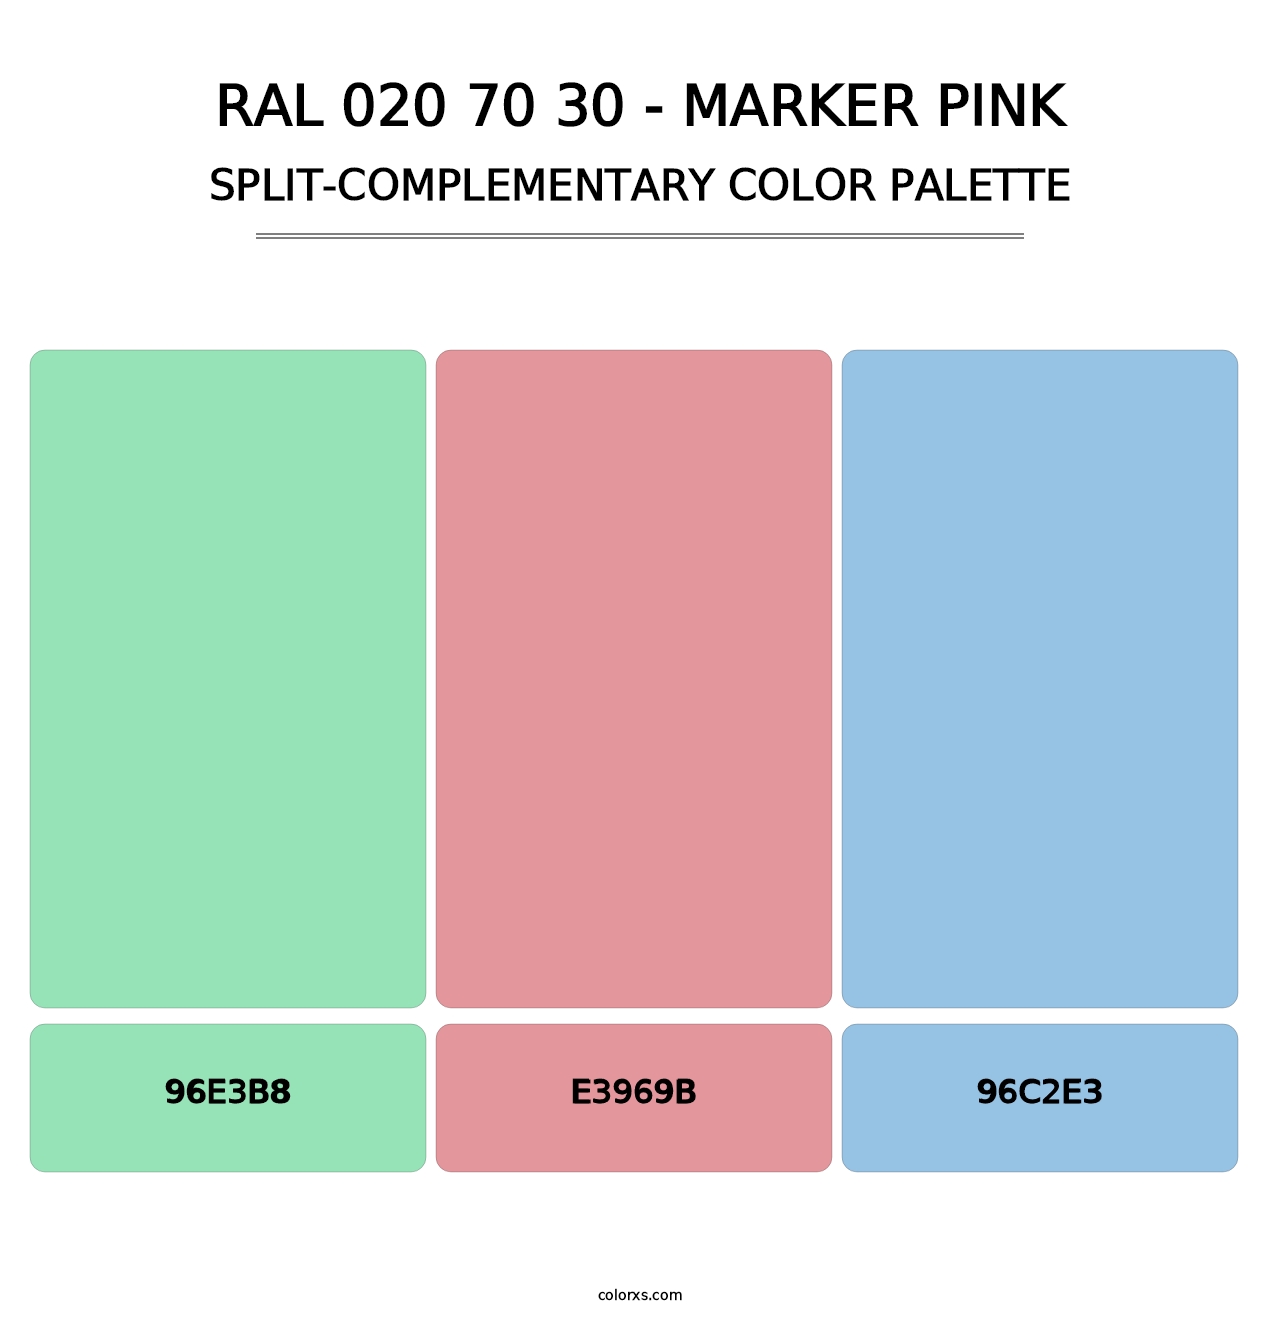 RAL 020 70 30 - Marker Pink - Split-Complementary Color Palette